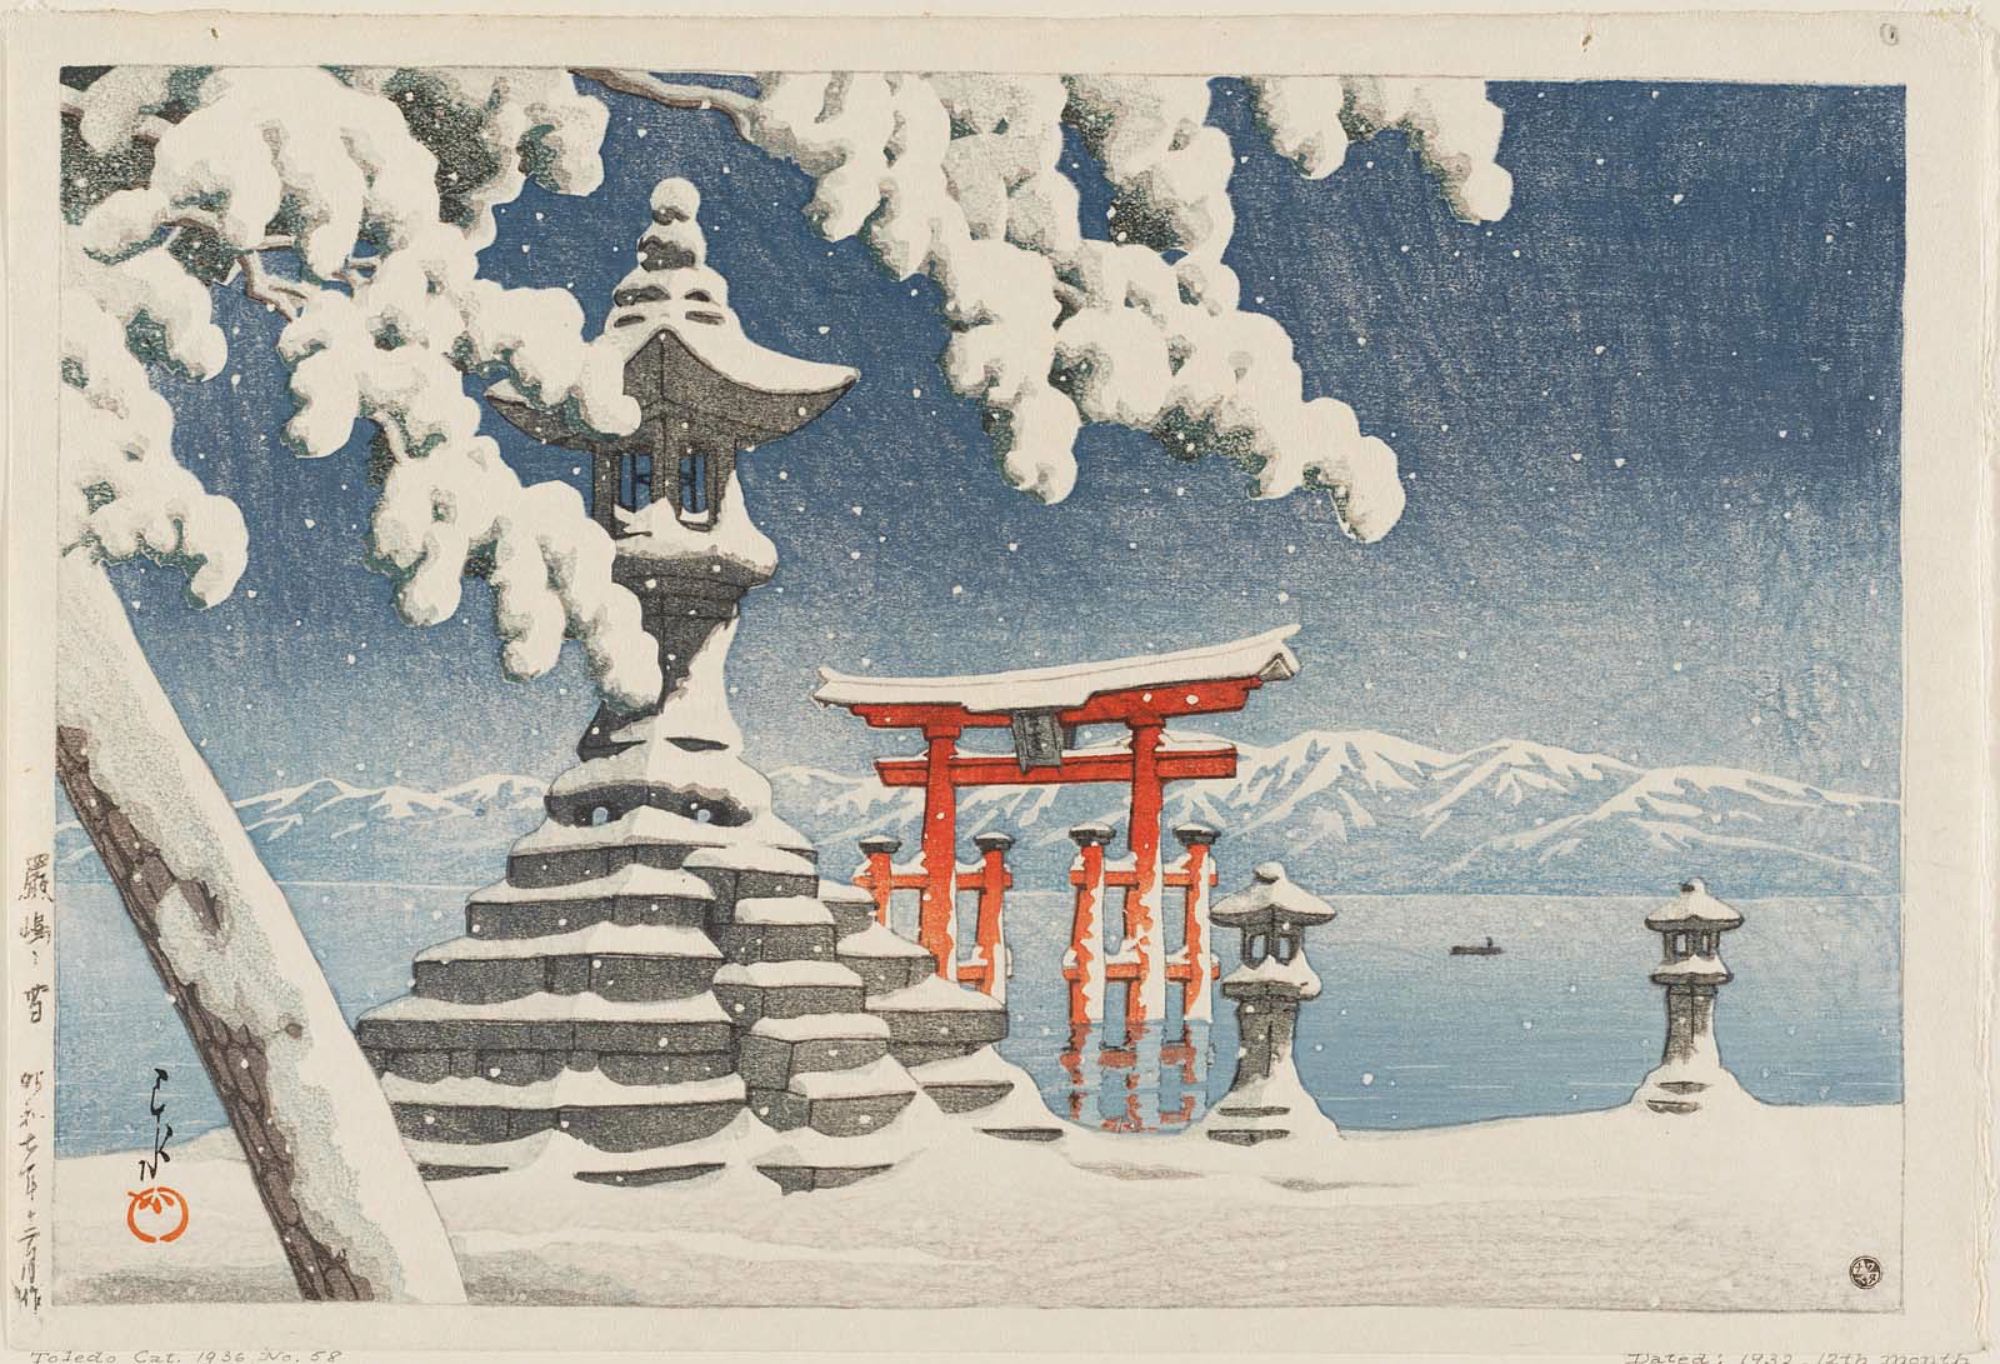 厳島之雪 by Hasui Kawase - 1932年 - 26.5 × 39.5 cm 